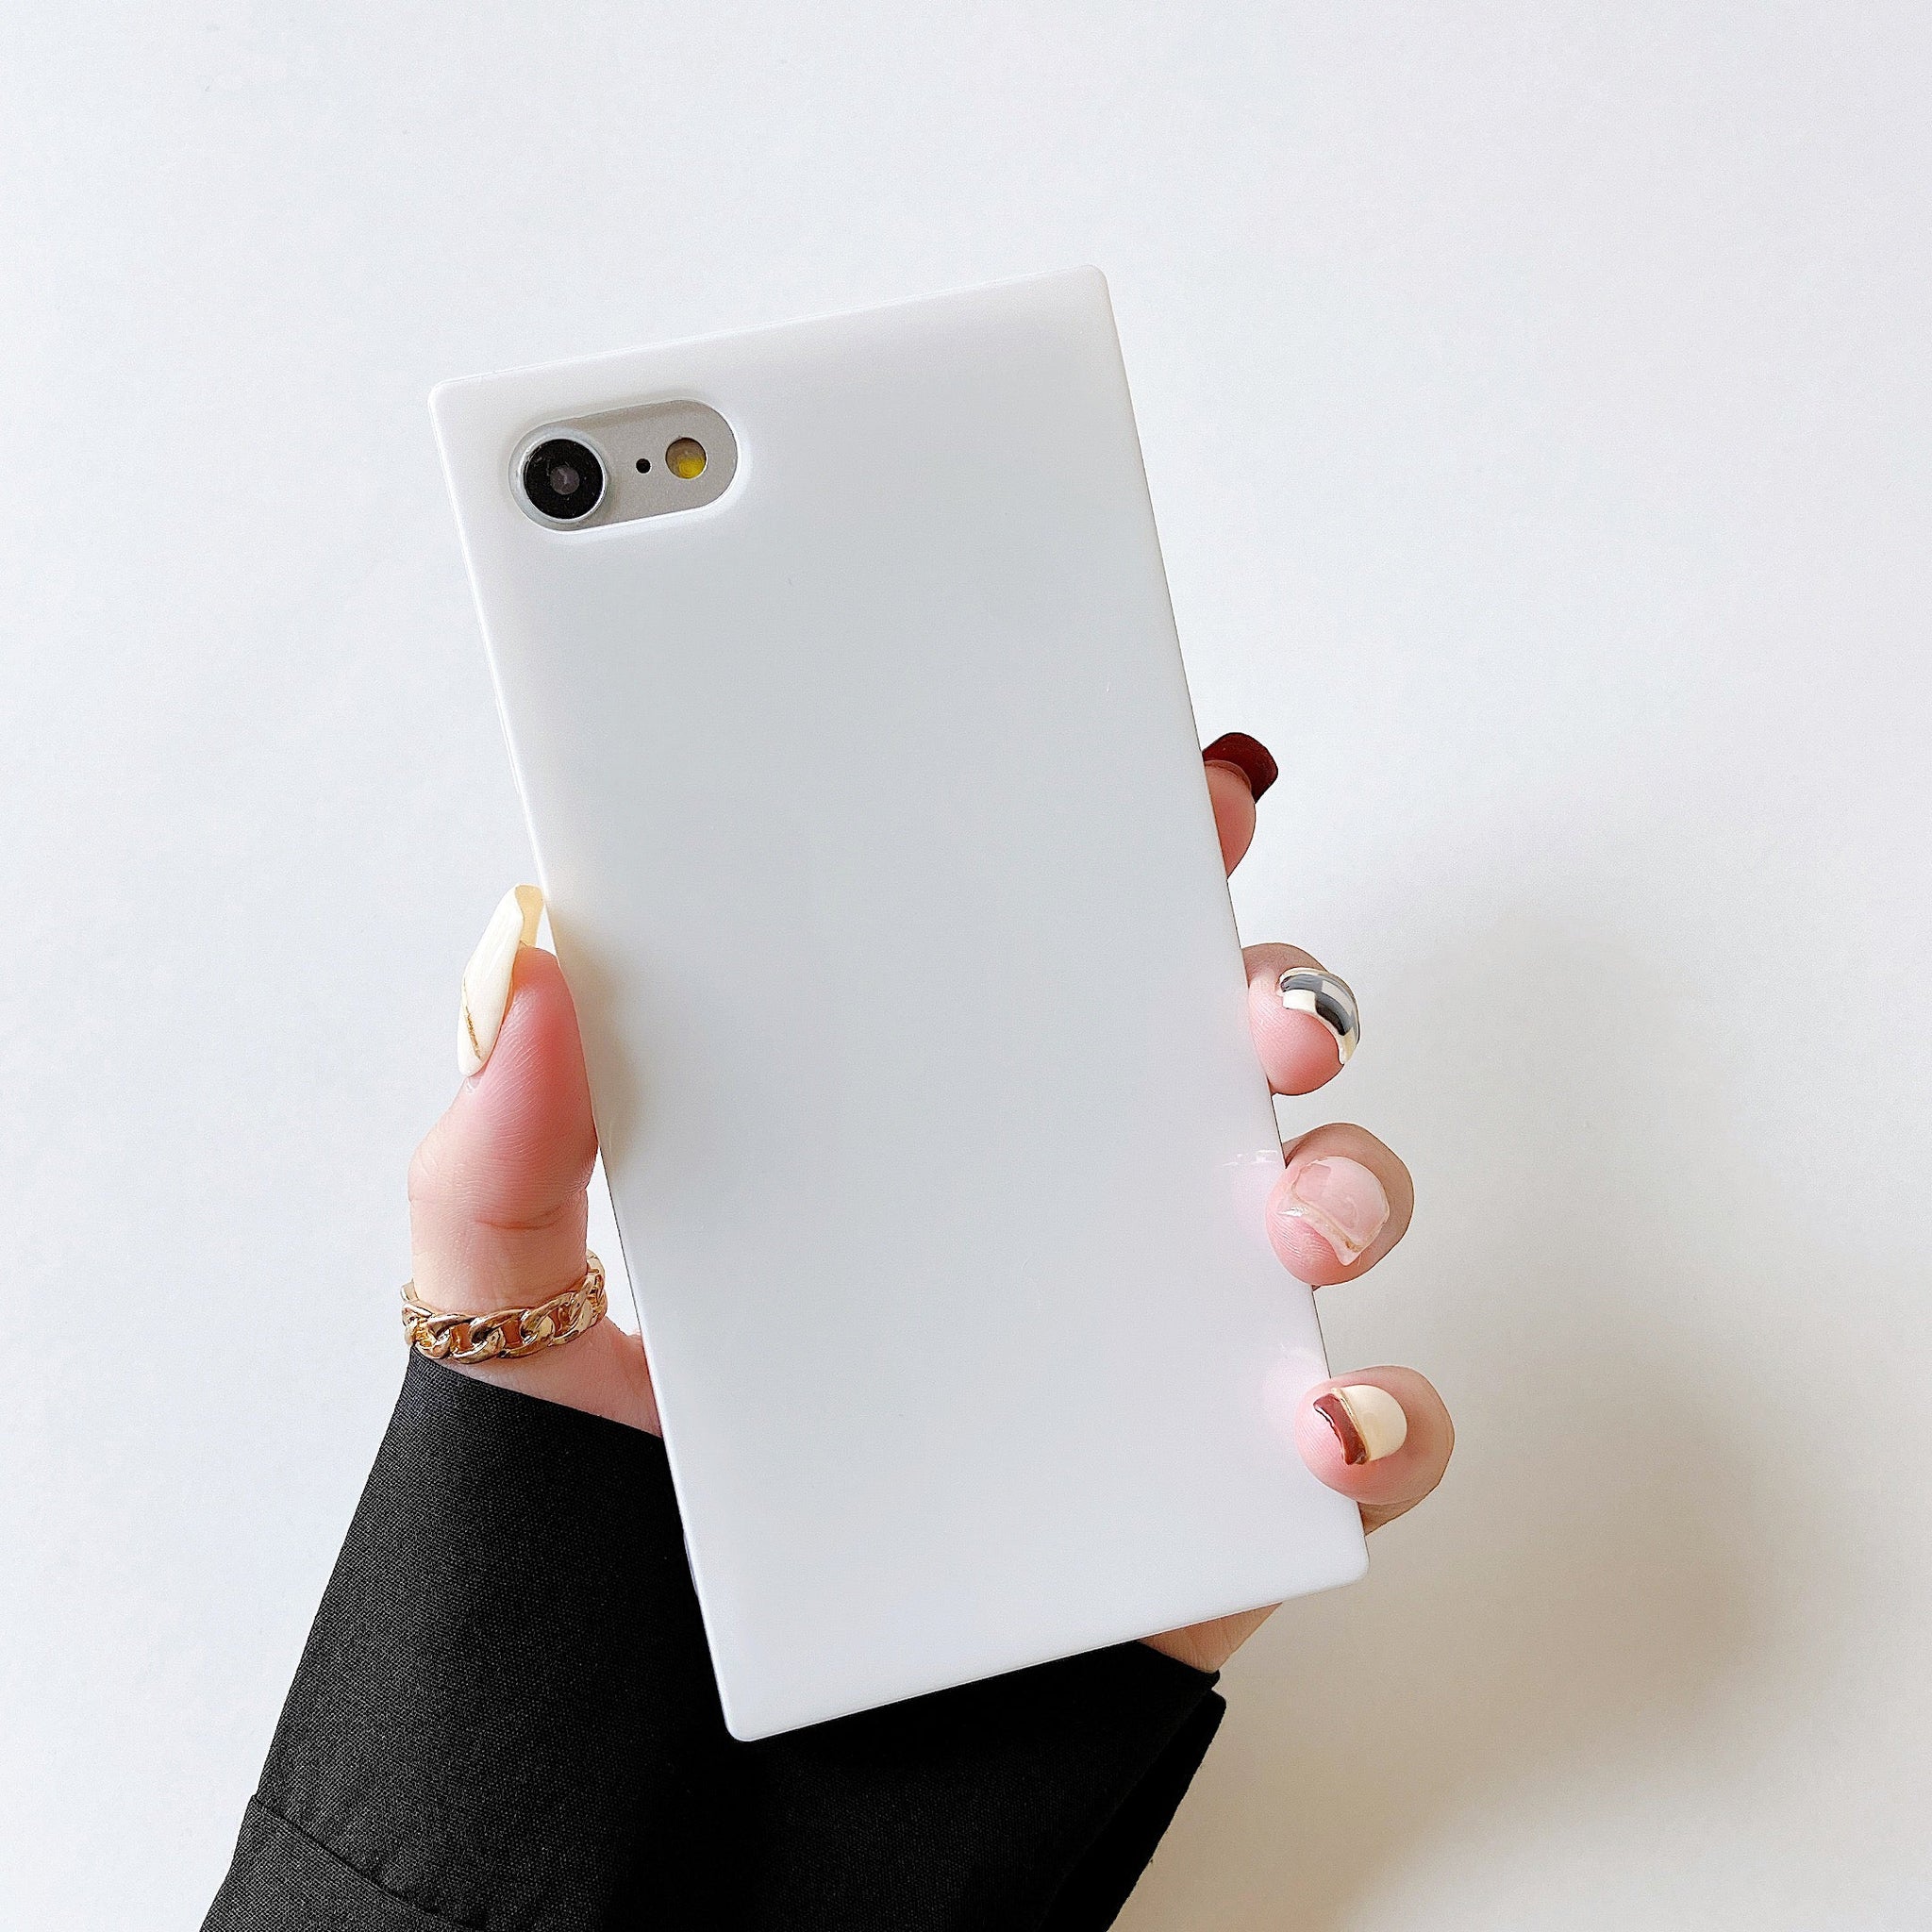 iPhone 8 Plus/7 Plus Case Square Neutral Plain Color (White)